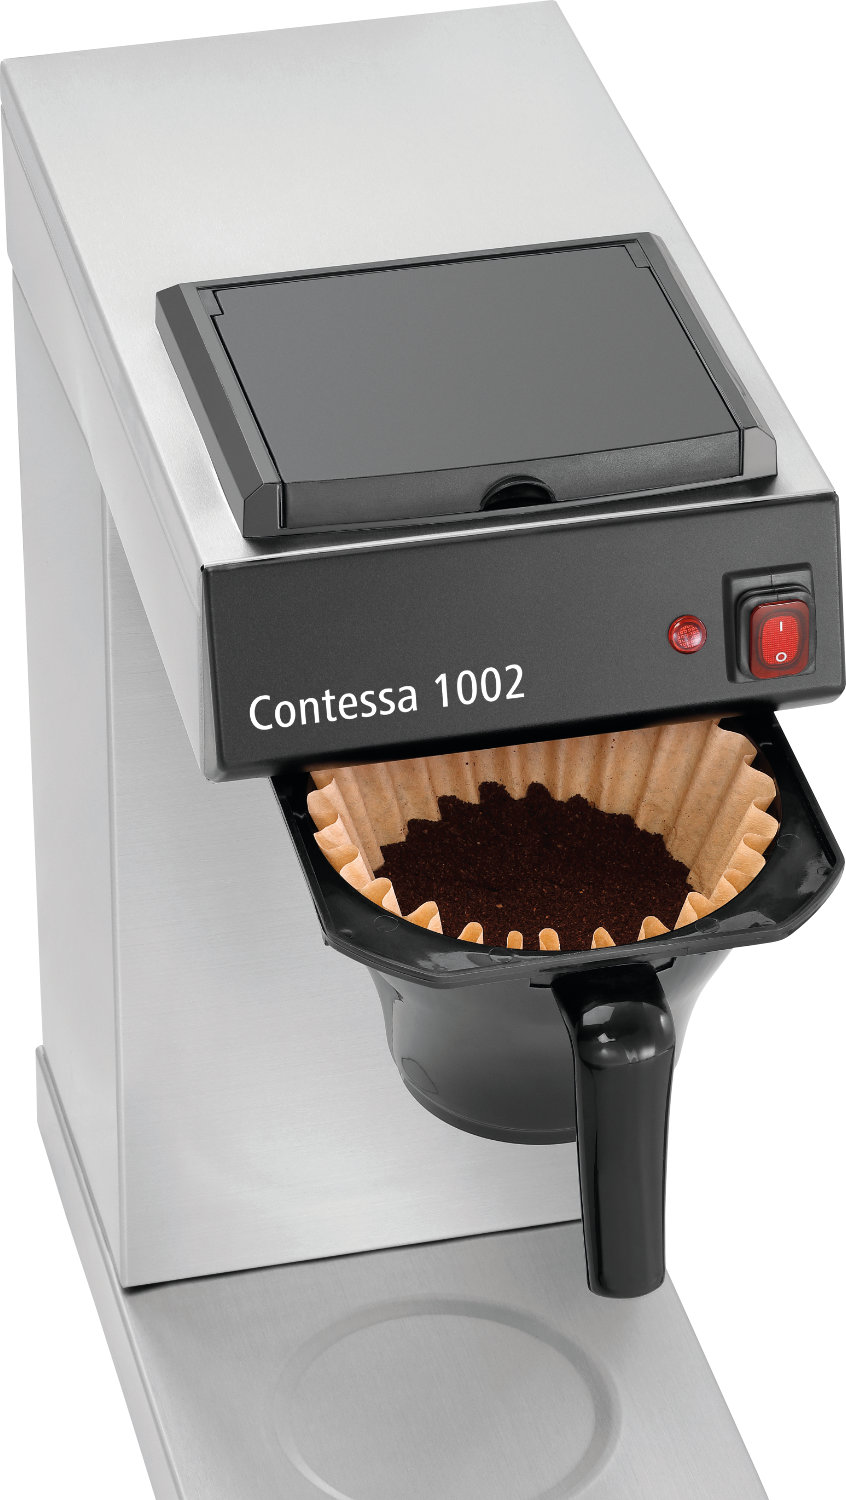  Bartscher Kaffeemaschine Contessa 1002 